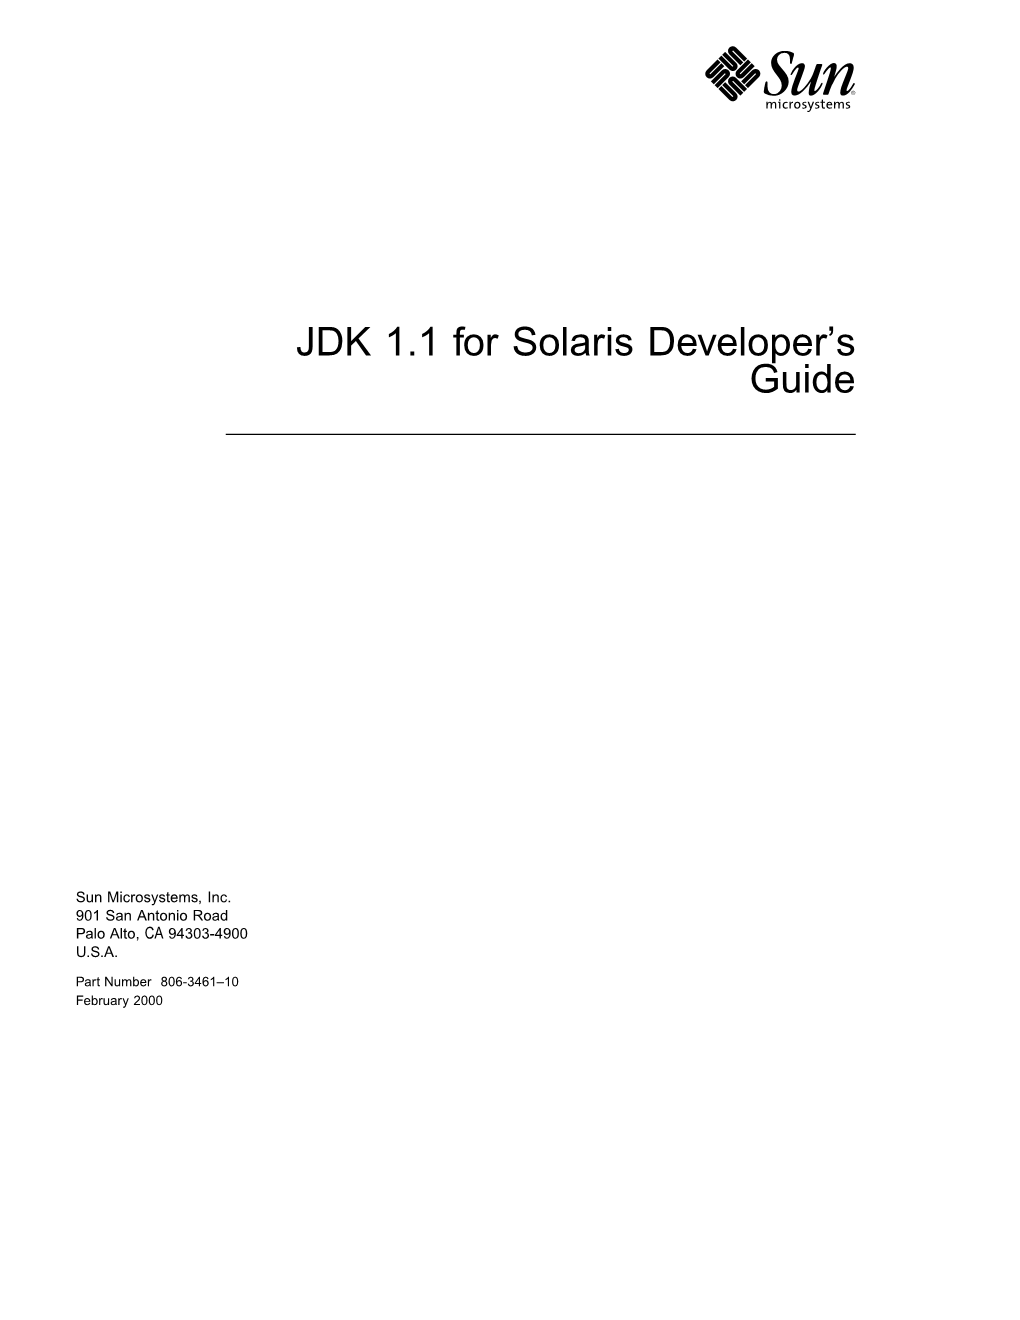 JDK 1.1 for Solaris Developer's Guide